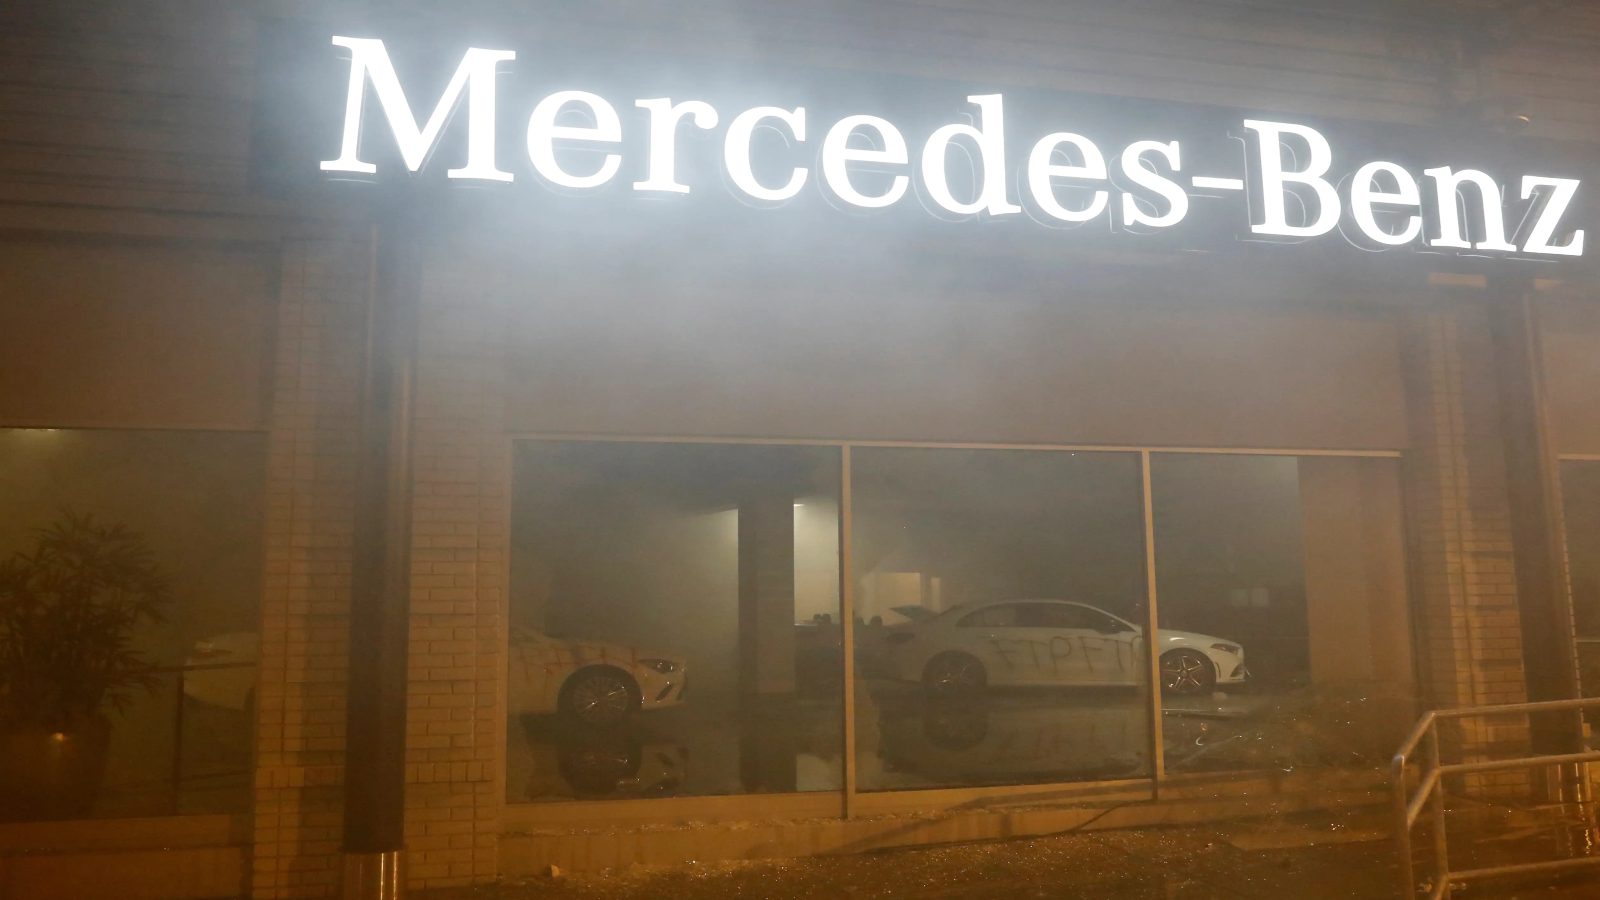 ԱՄՆ-ում ցուցարարները ներխուժել են Mercedes-ի ավտոսրահ՝ այրել և կոտրել են մեքենաները (լուսանկարներ, տեսանյութ)